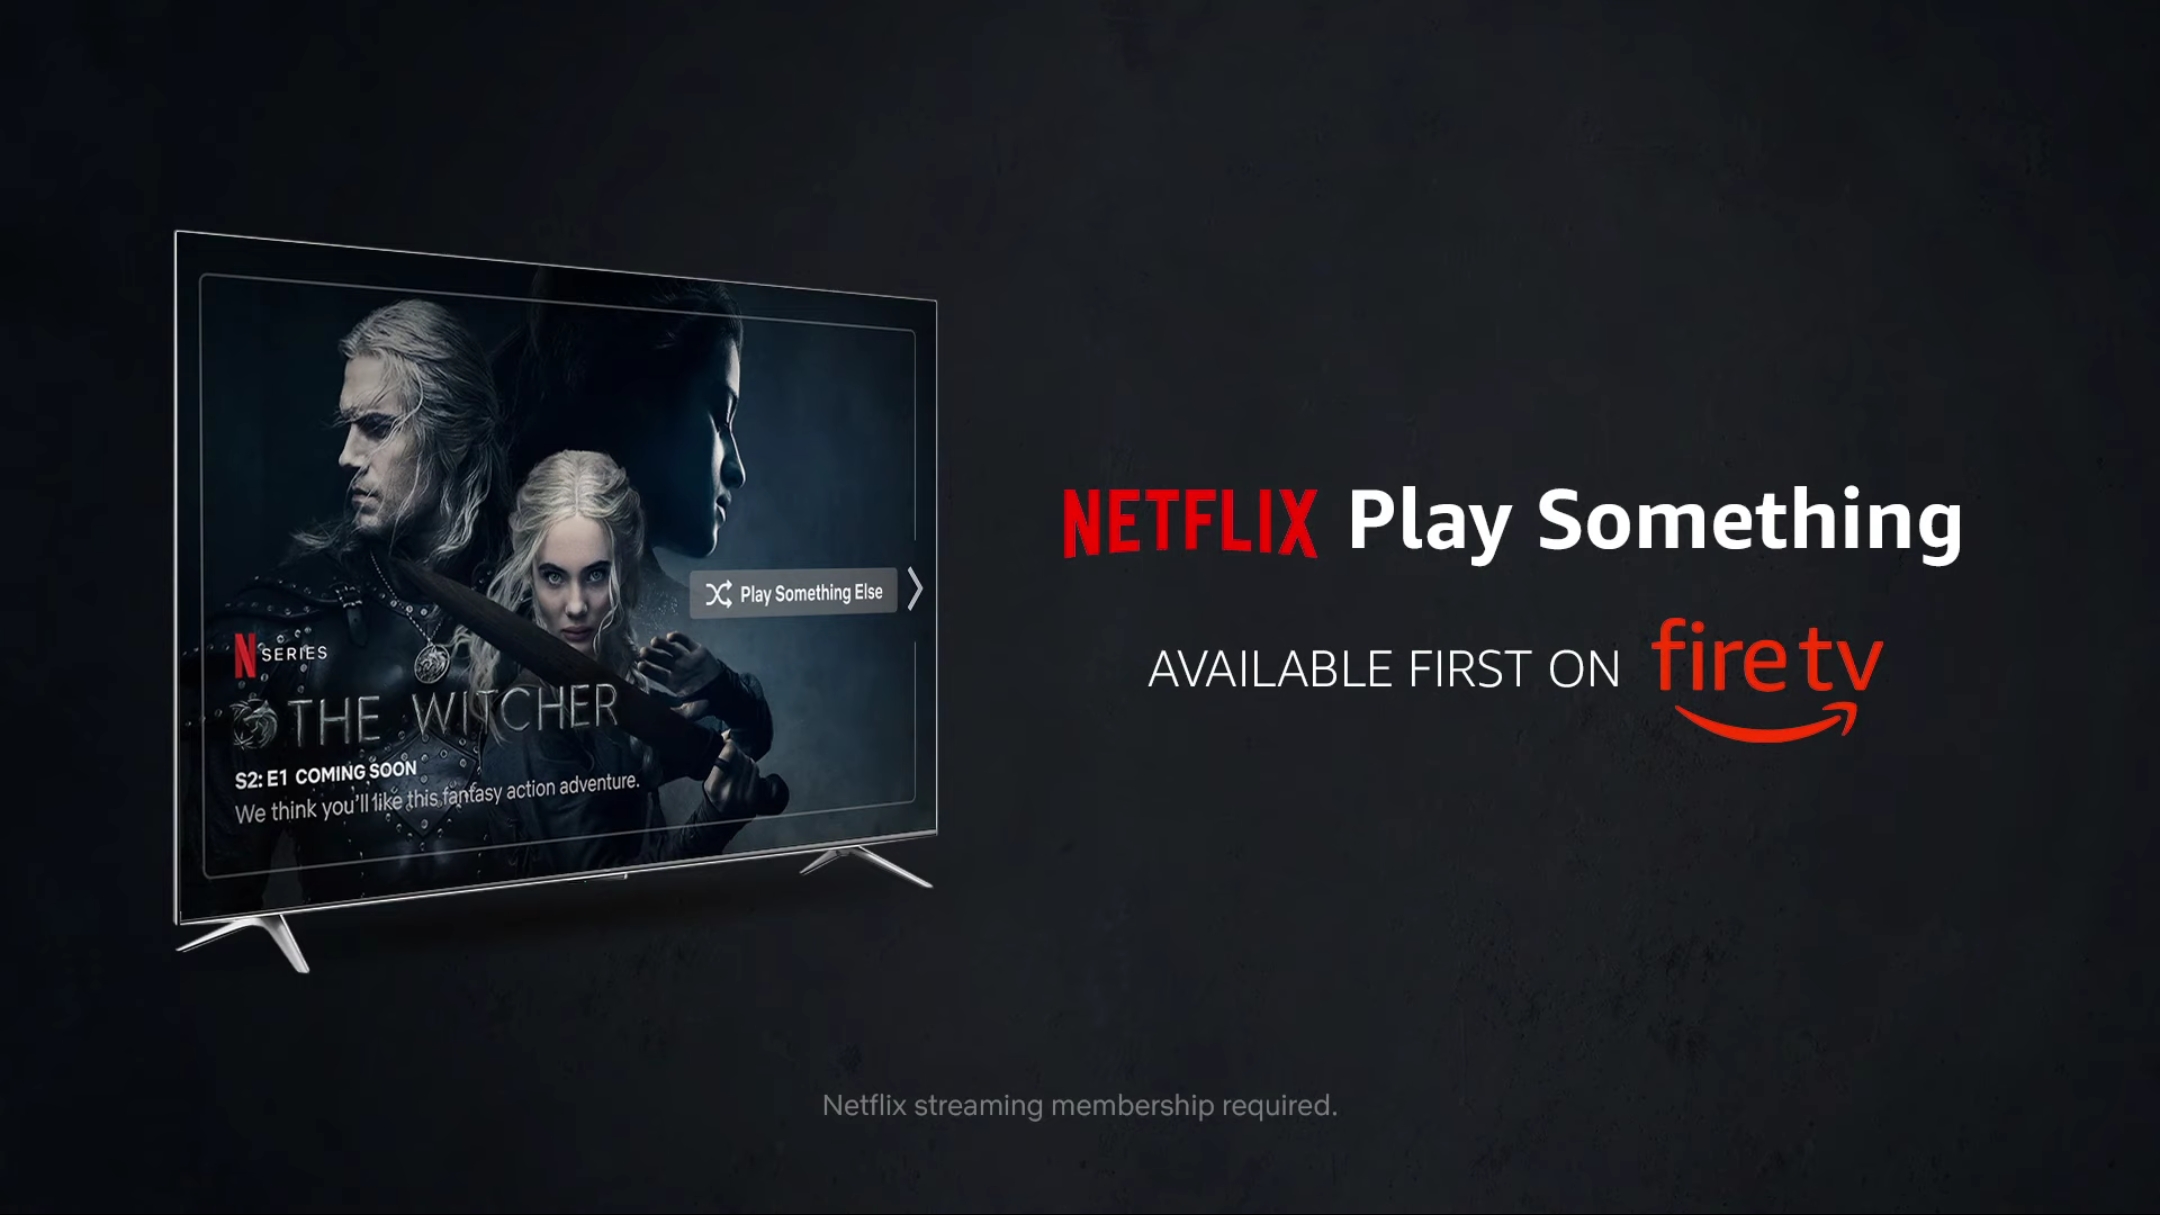 Anda Kini Boleh Menyeru Alexa Untuk “Play Something” Di Netflix Melalui Fire TV